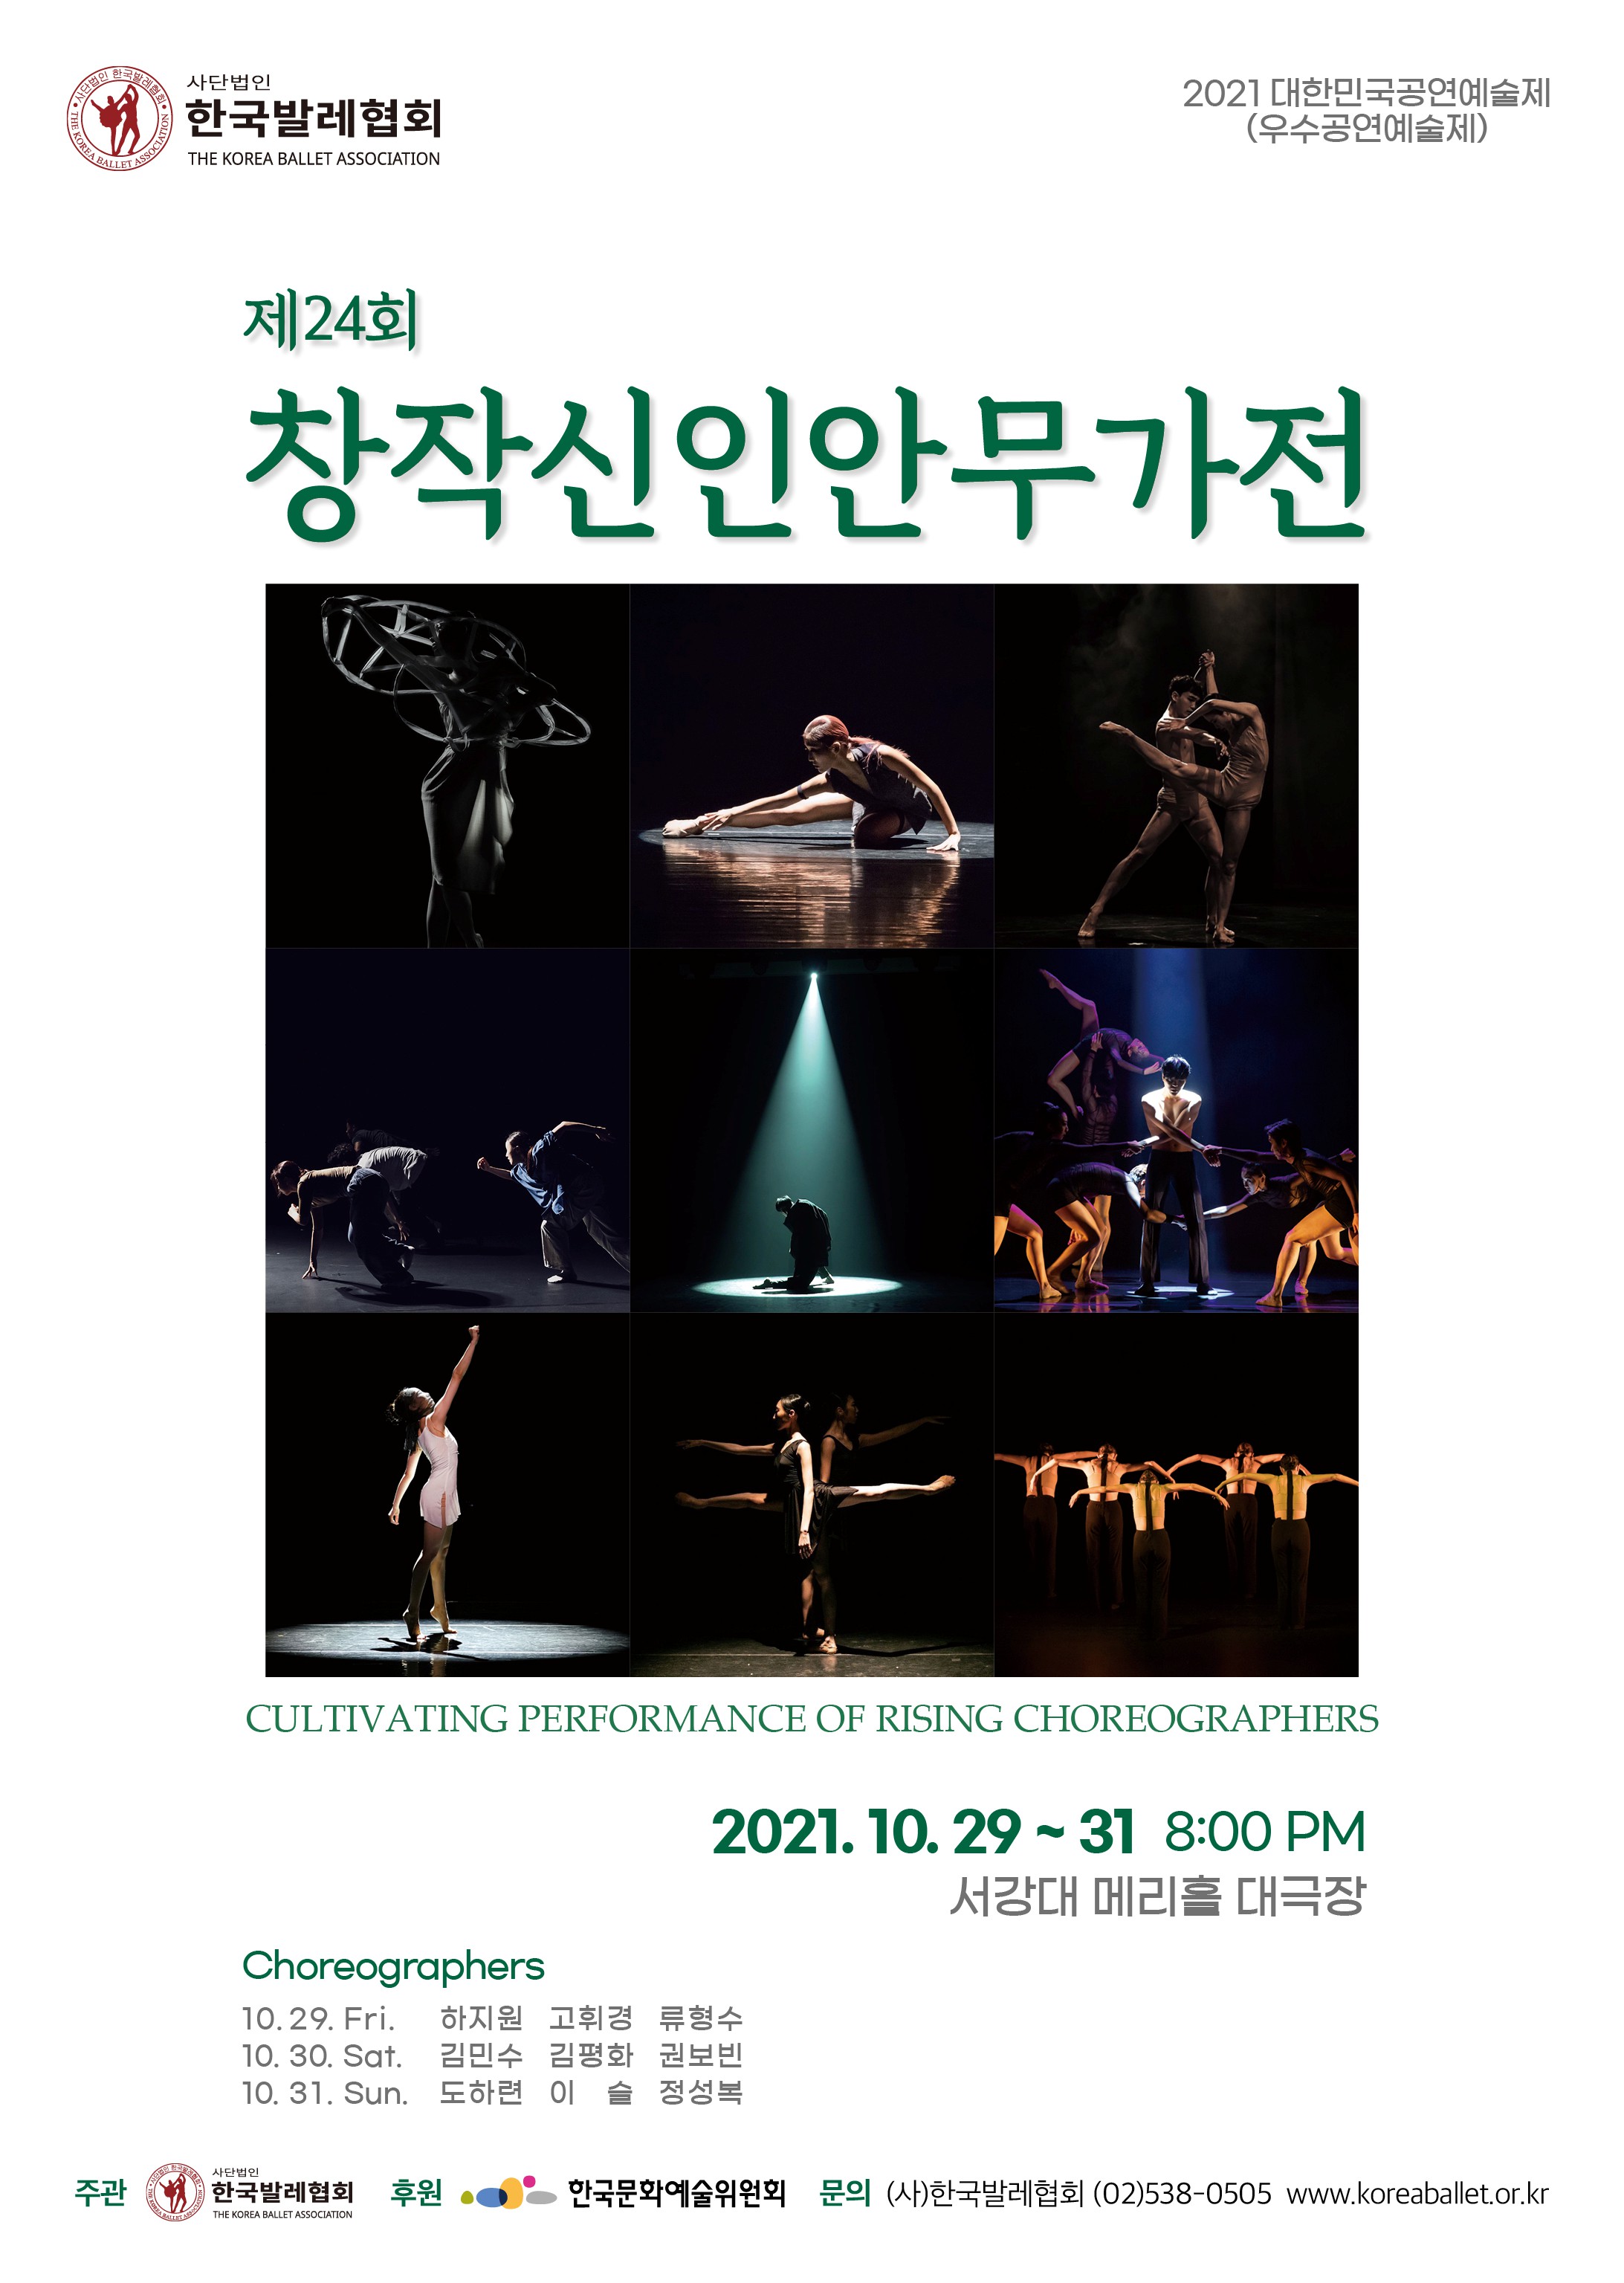 한국발레협회, 제24회 창작신인안무가전 10월 29일부터 31일까지 개최